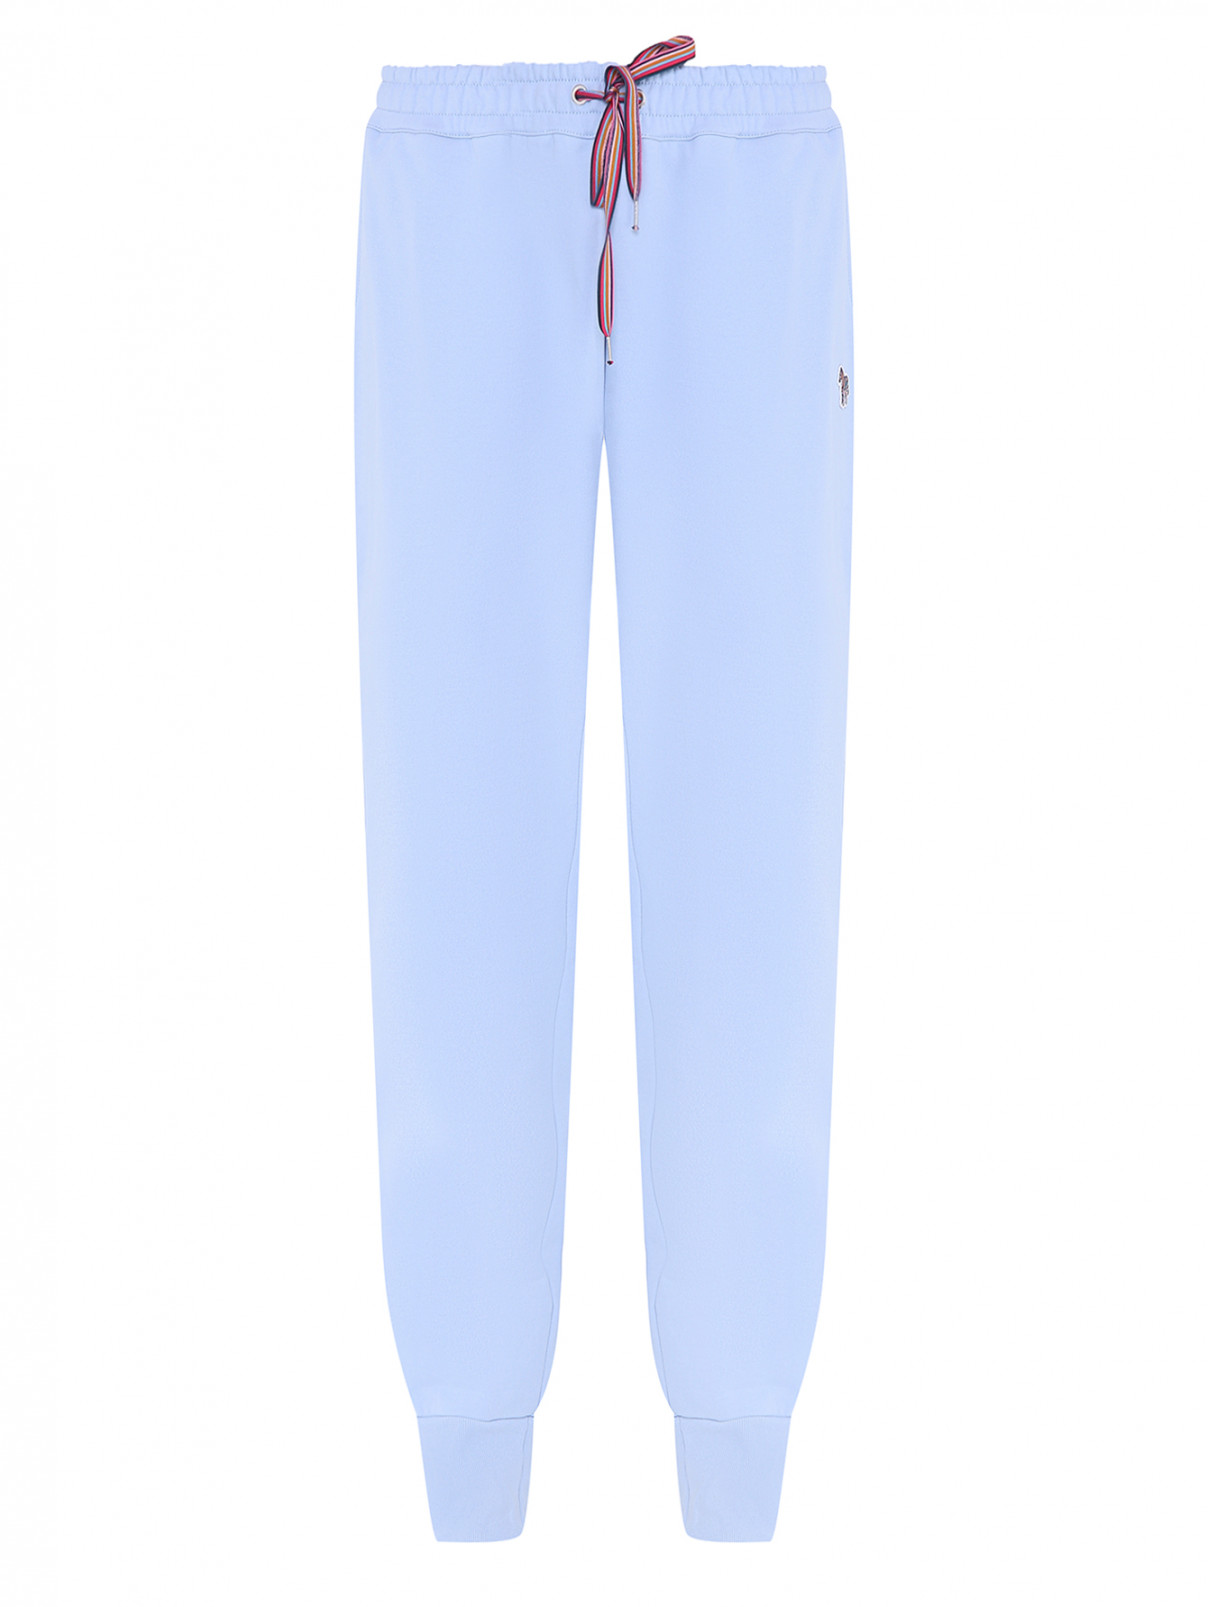 Трикотажные брюки с манжетами Paul Smith  –  Общий вид  – Цвет:  Синий